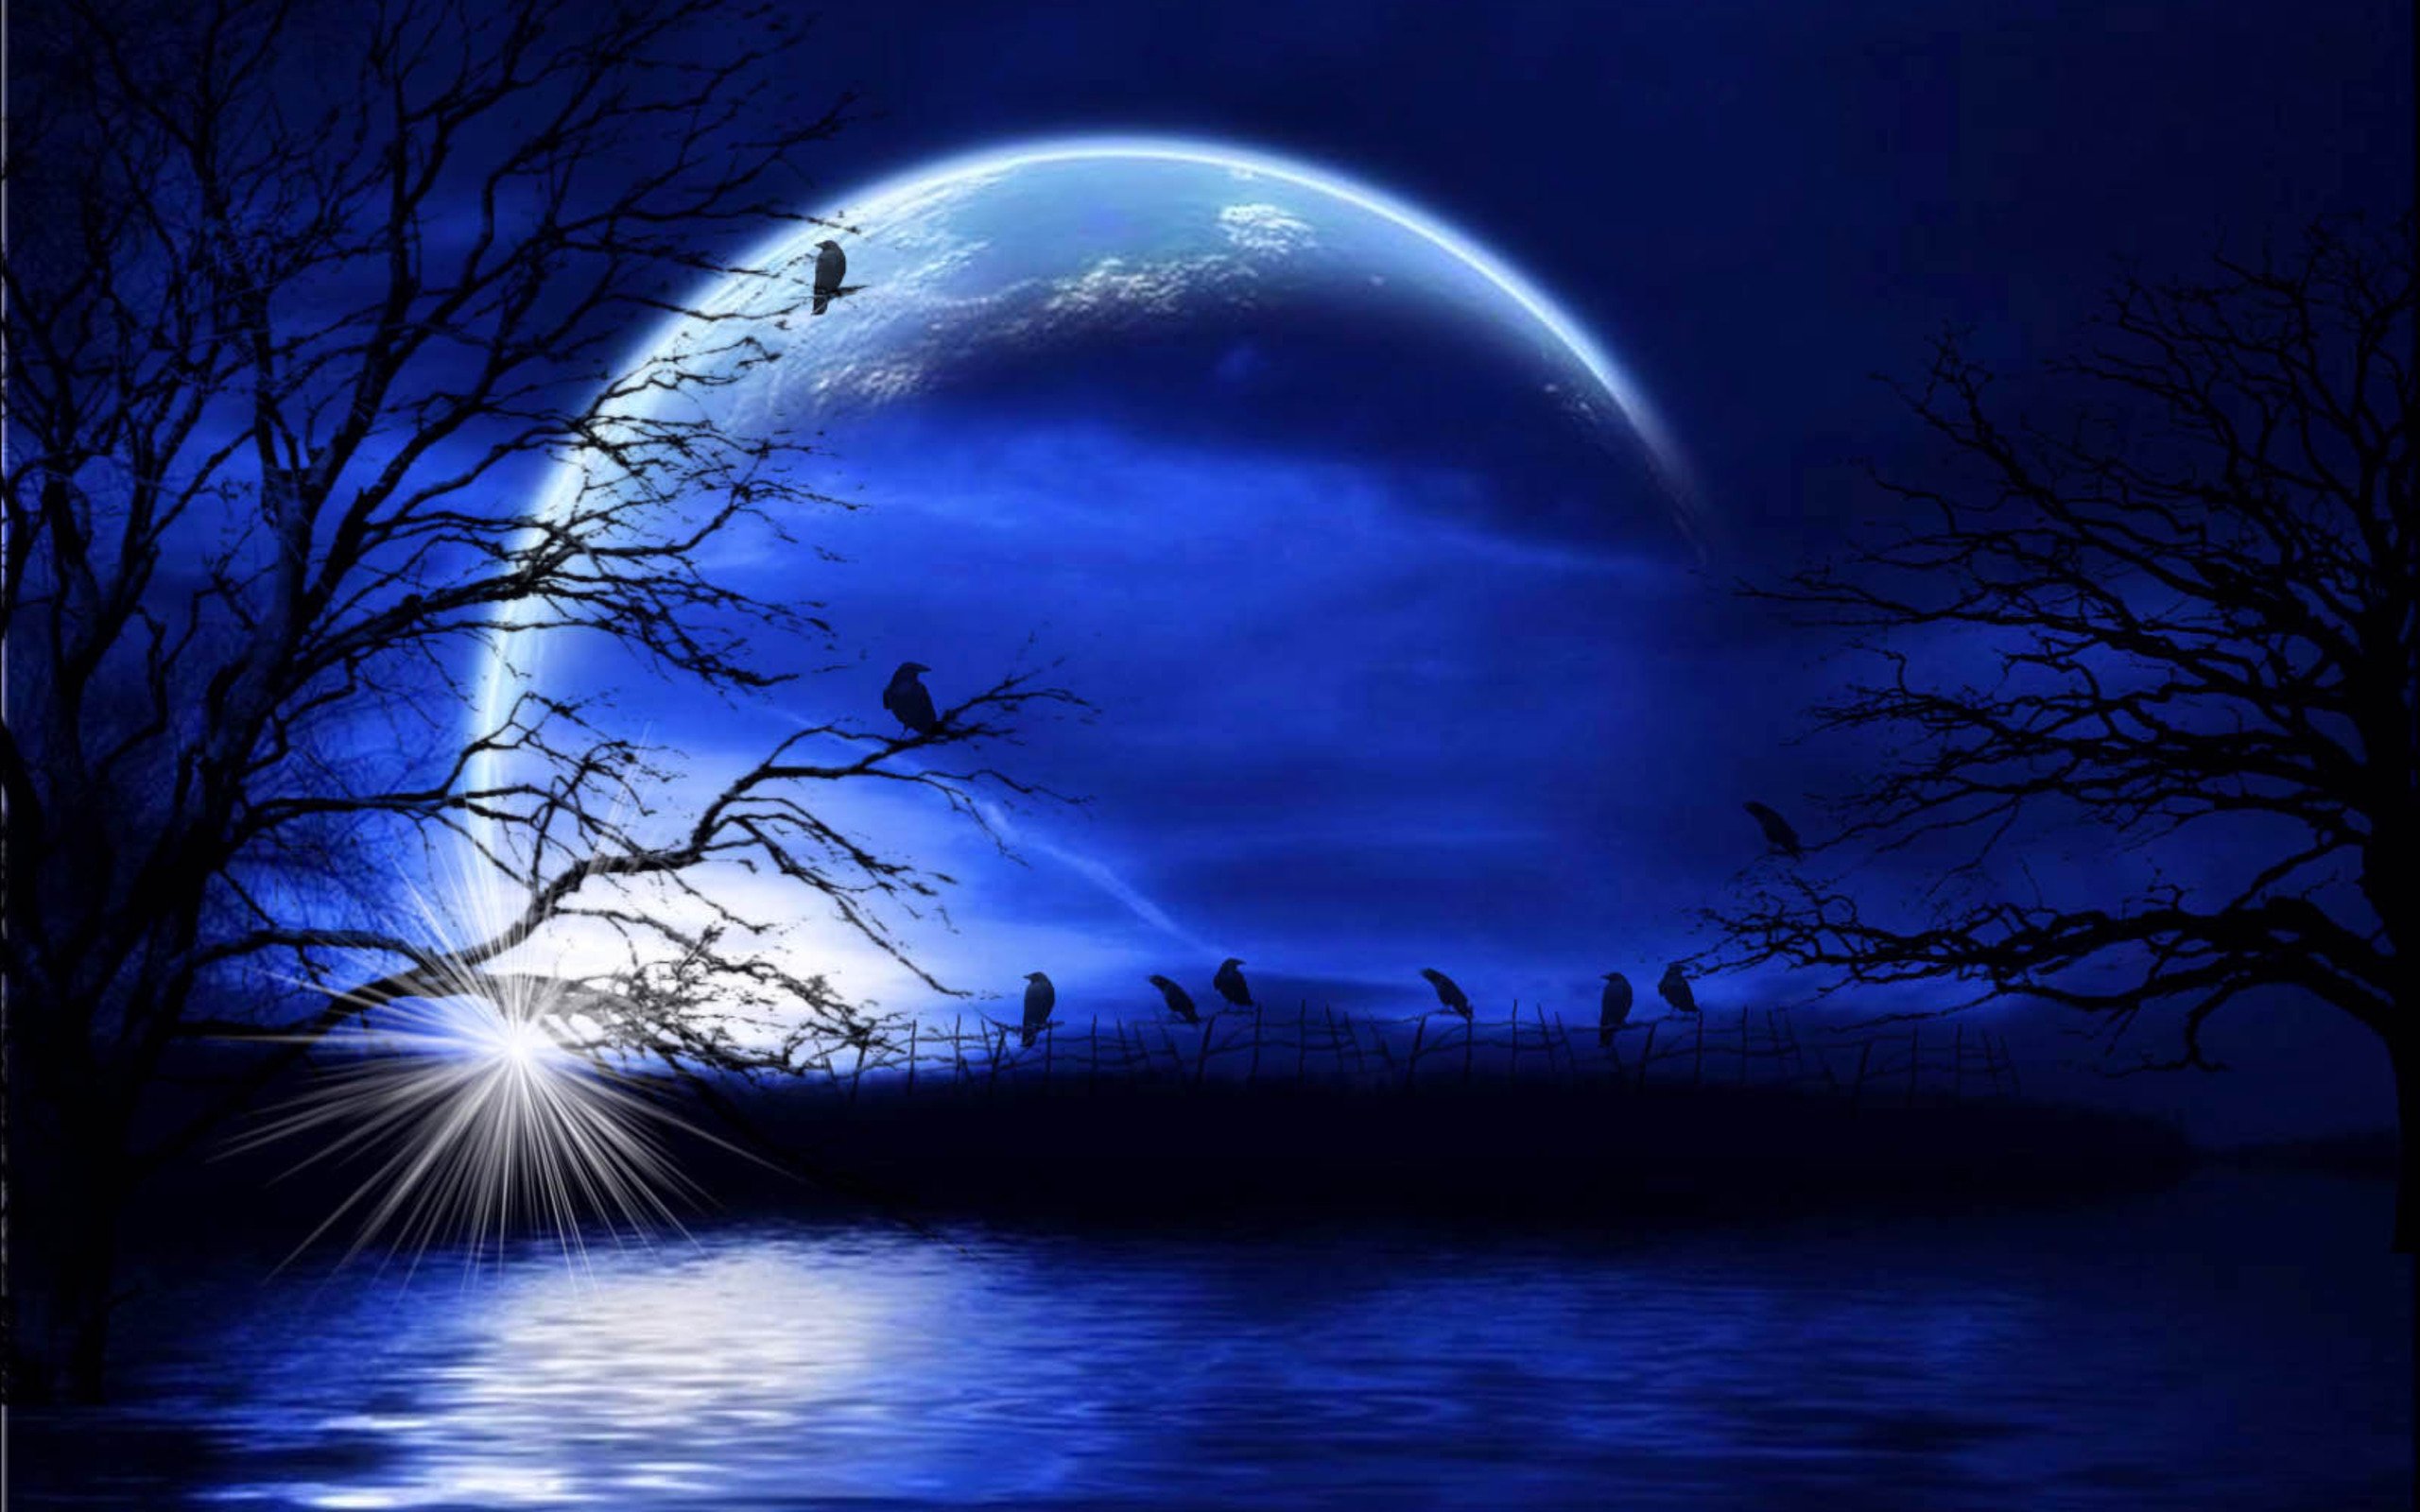 Наночь или на ночь. Лунная ночь. Ночной пейзаж. Сказочная ночь. Красивые лунные пейзажи.